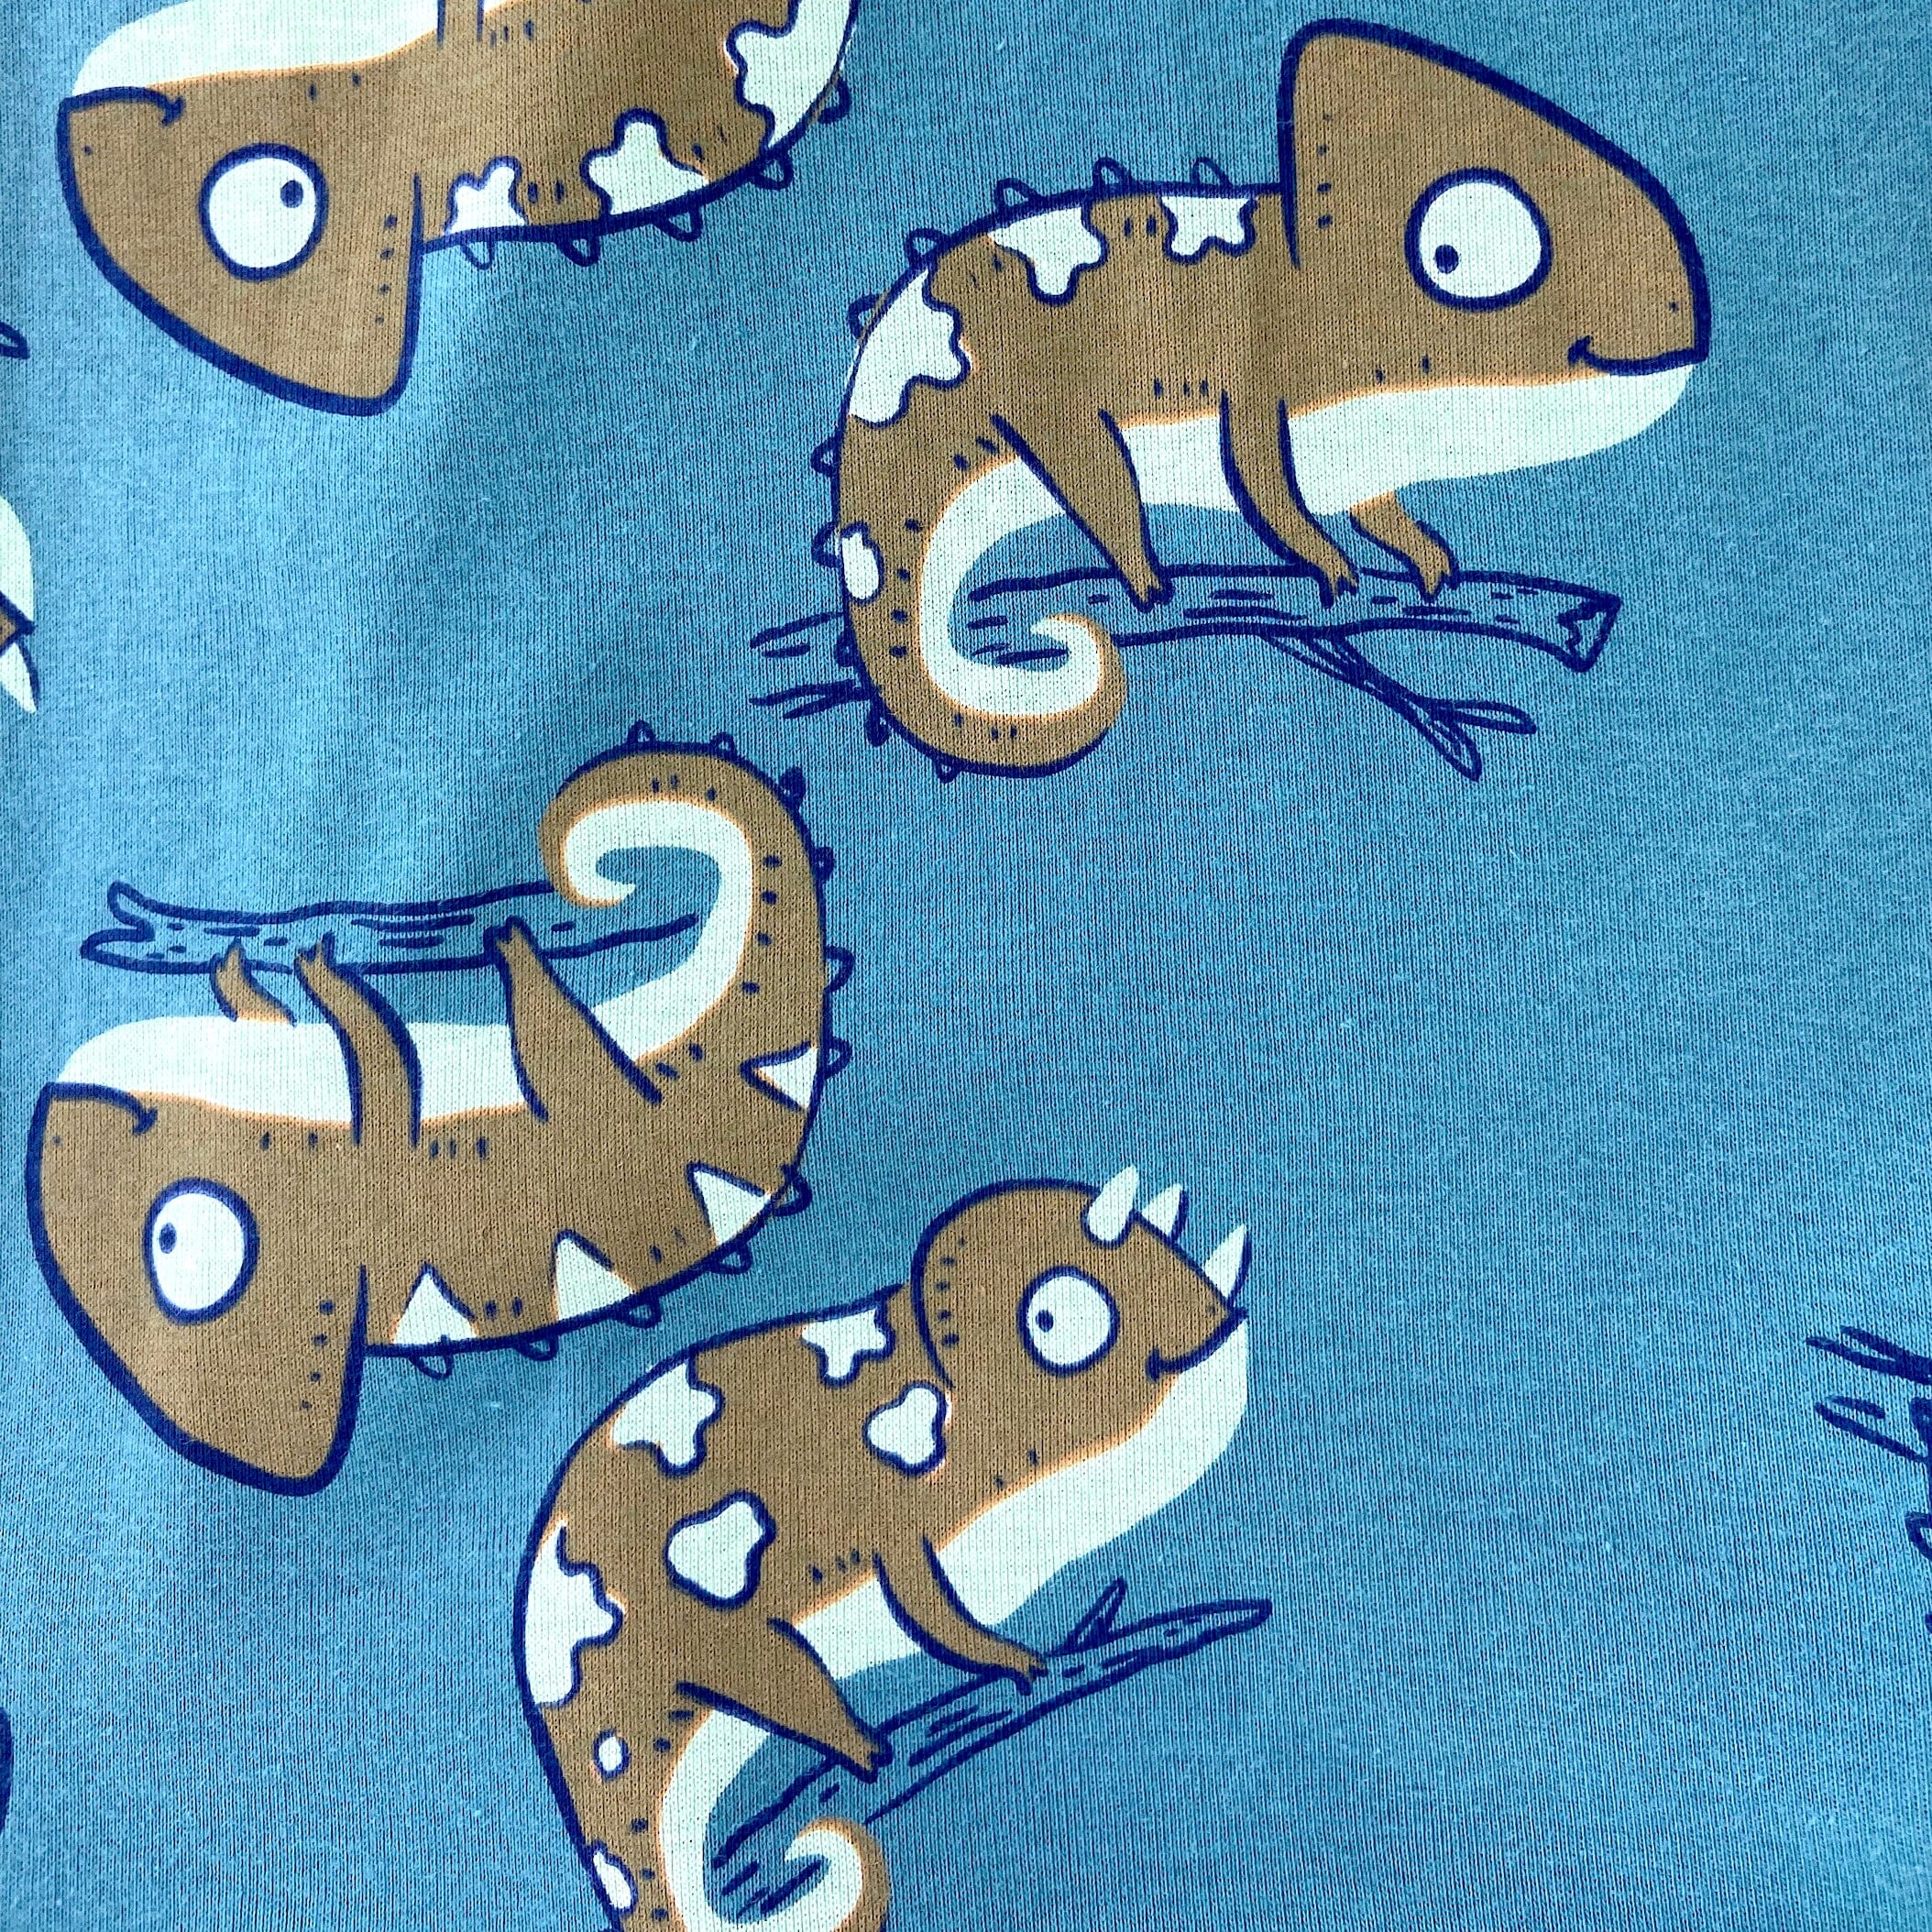 Men's Chameleon Iguana Novelty Print Cotton Knit Long Pajama PJ Pants